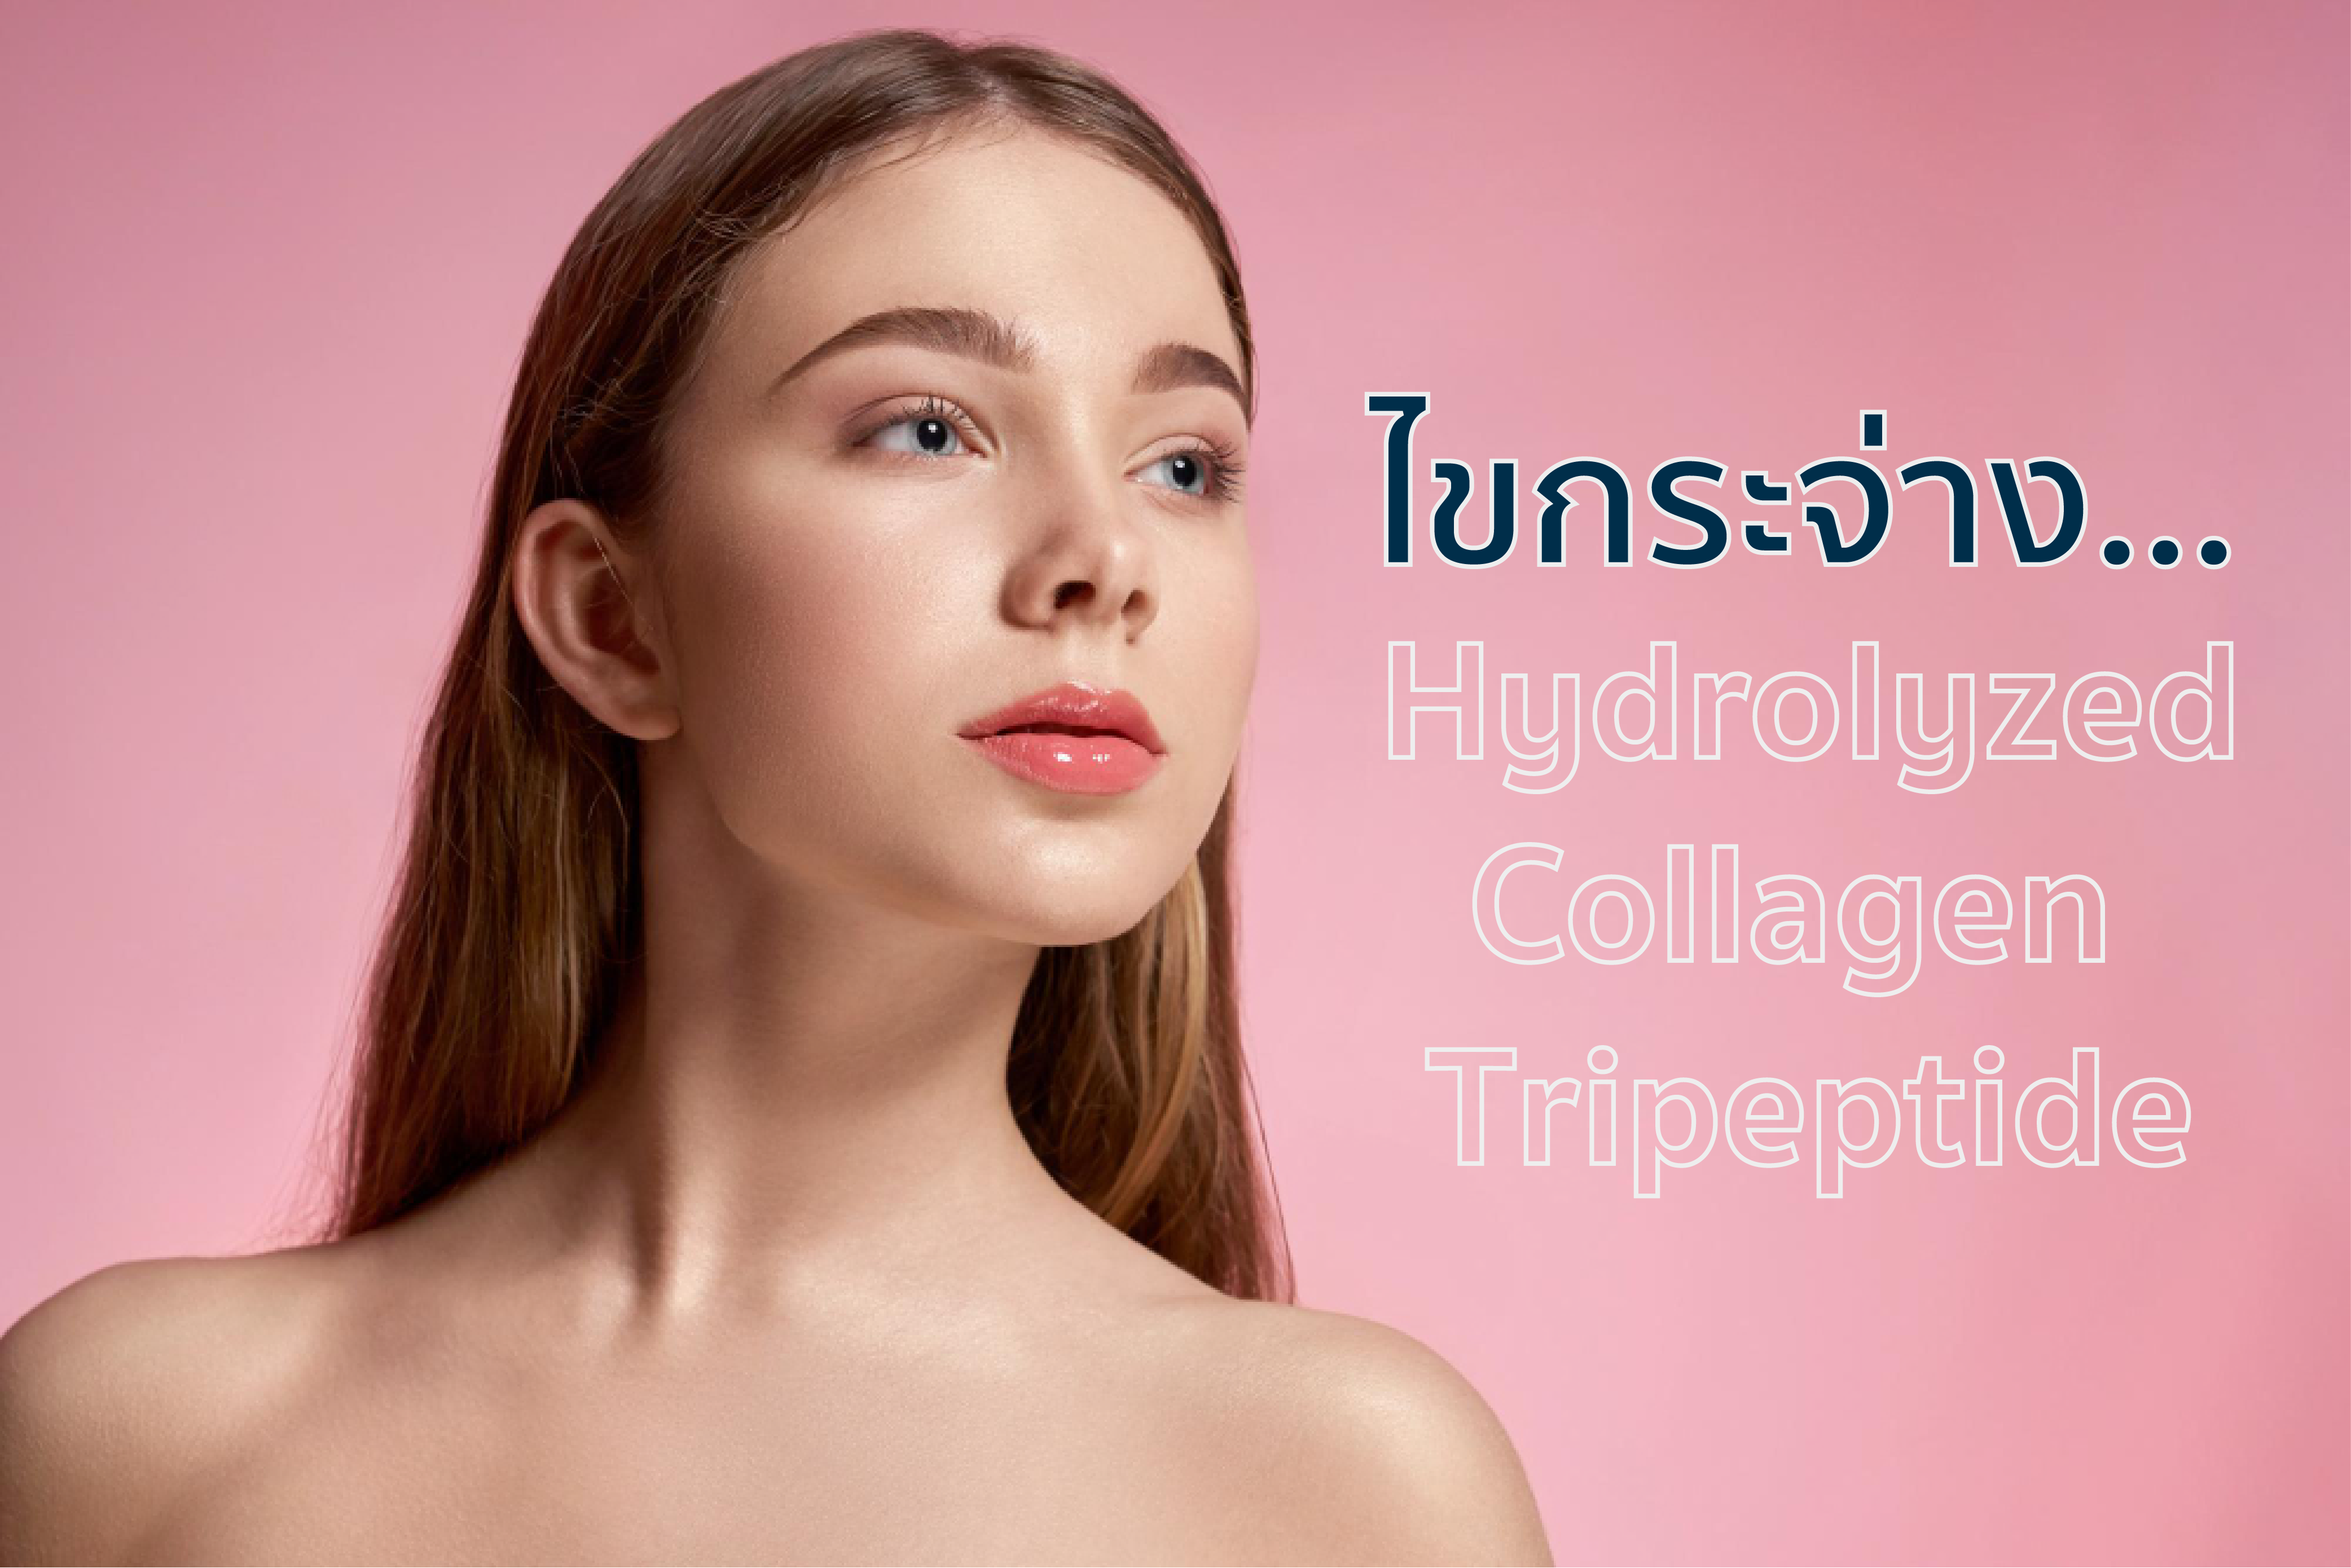 hydrolyzed collagen tripeptide